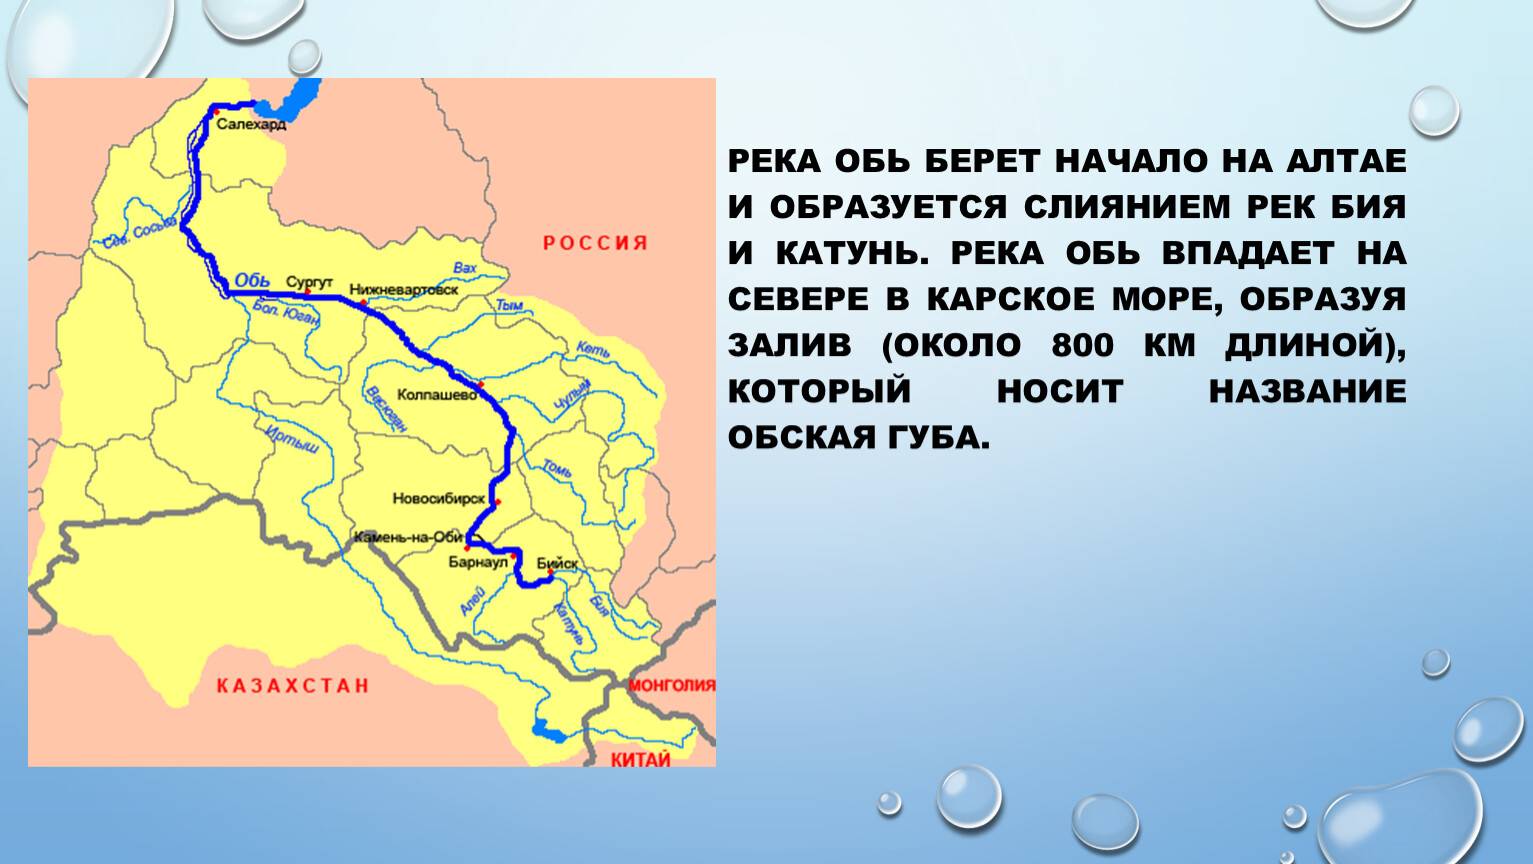 Великая река восточной сибири енисей: характеристика, города на реке, фото, где исток, какие реки впадают в енисей, природа реки